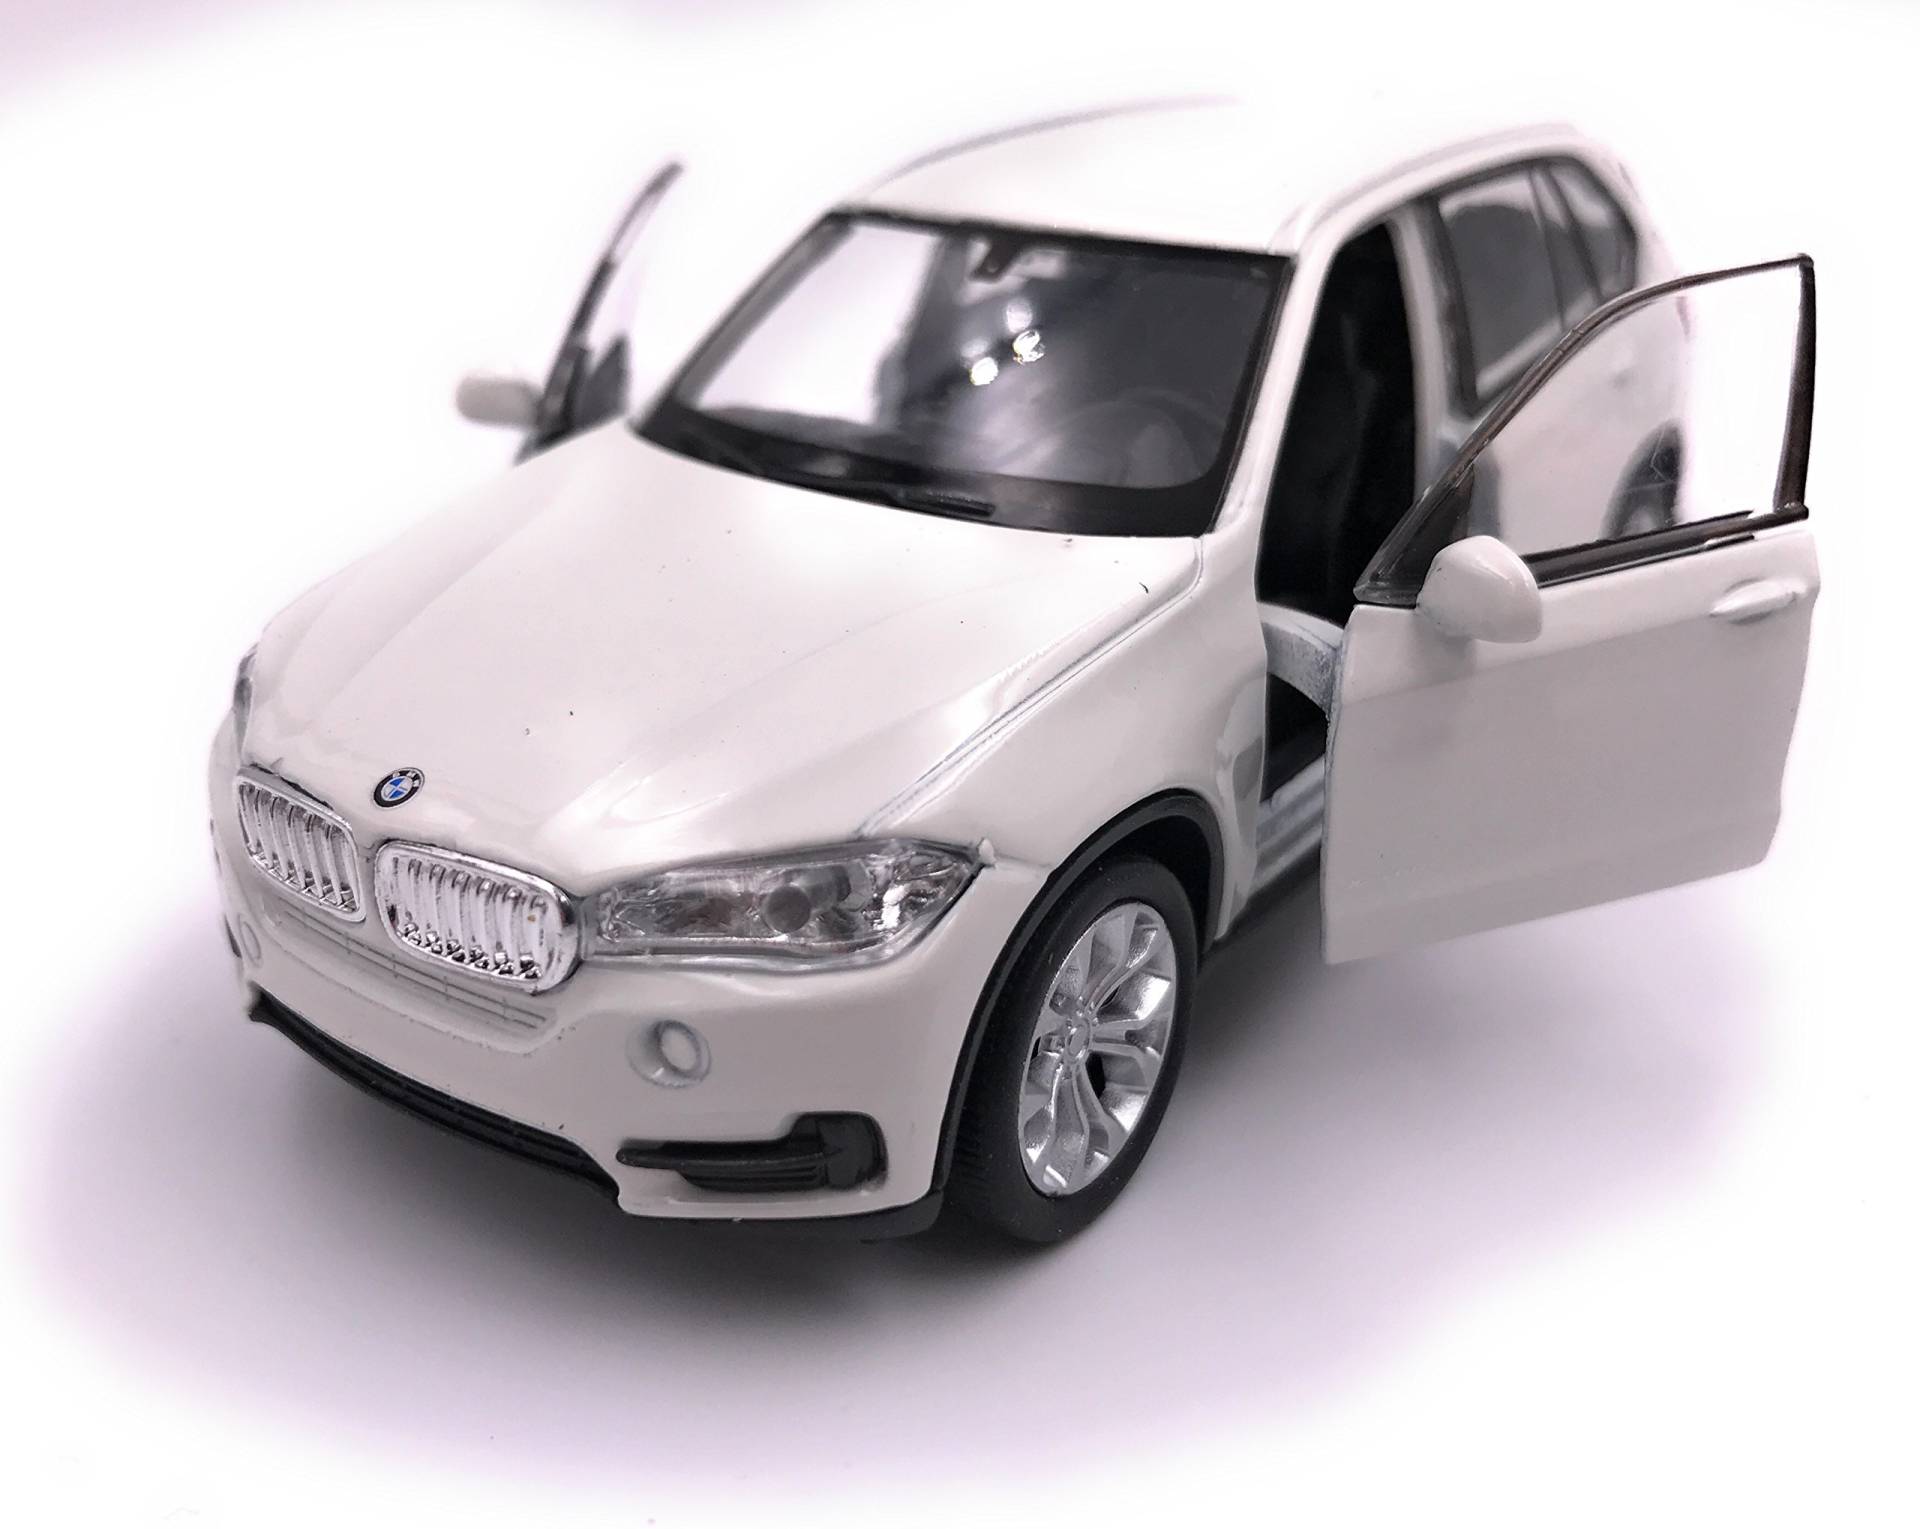 H-Customs Spielmodell von X5 SUV Modellauto Auto Lizenzprodukt 1:34 zufällige Farbauswahl von H-Customs